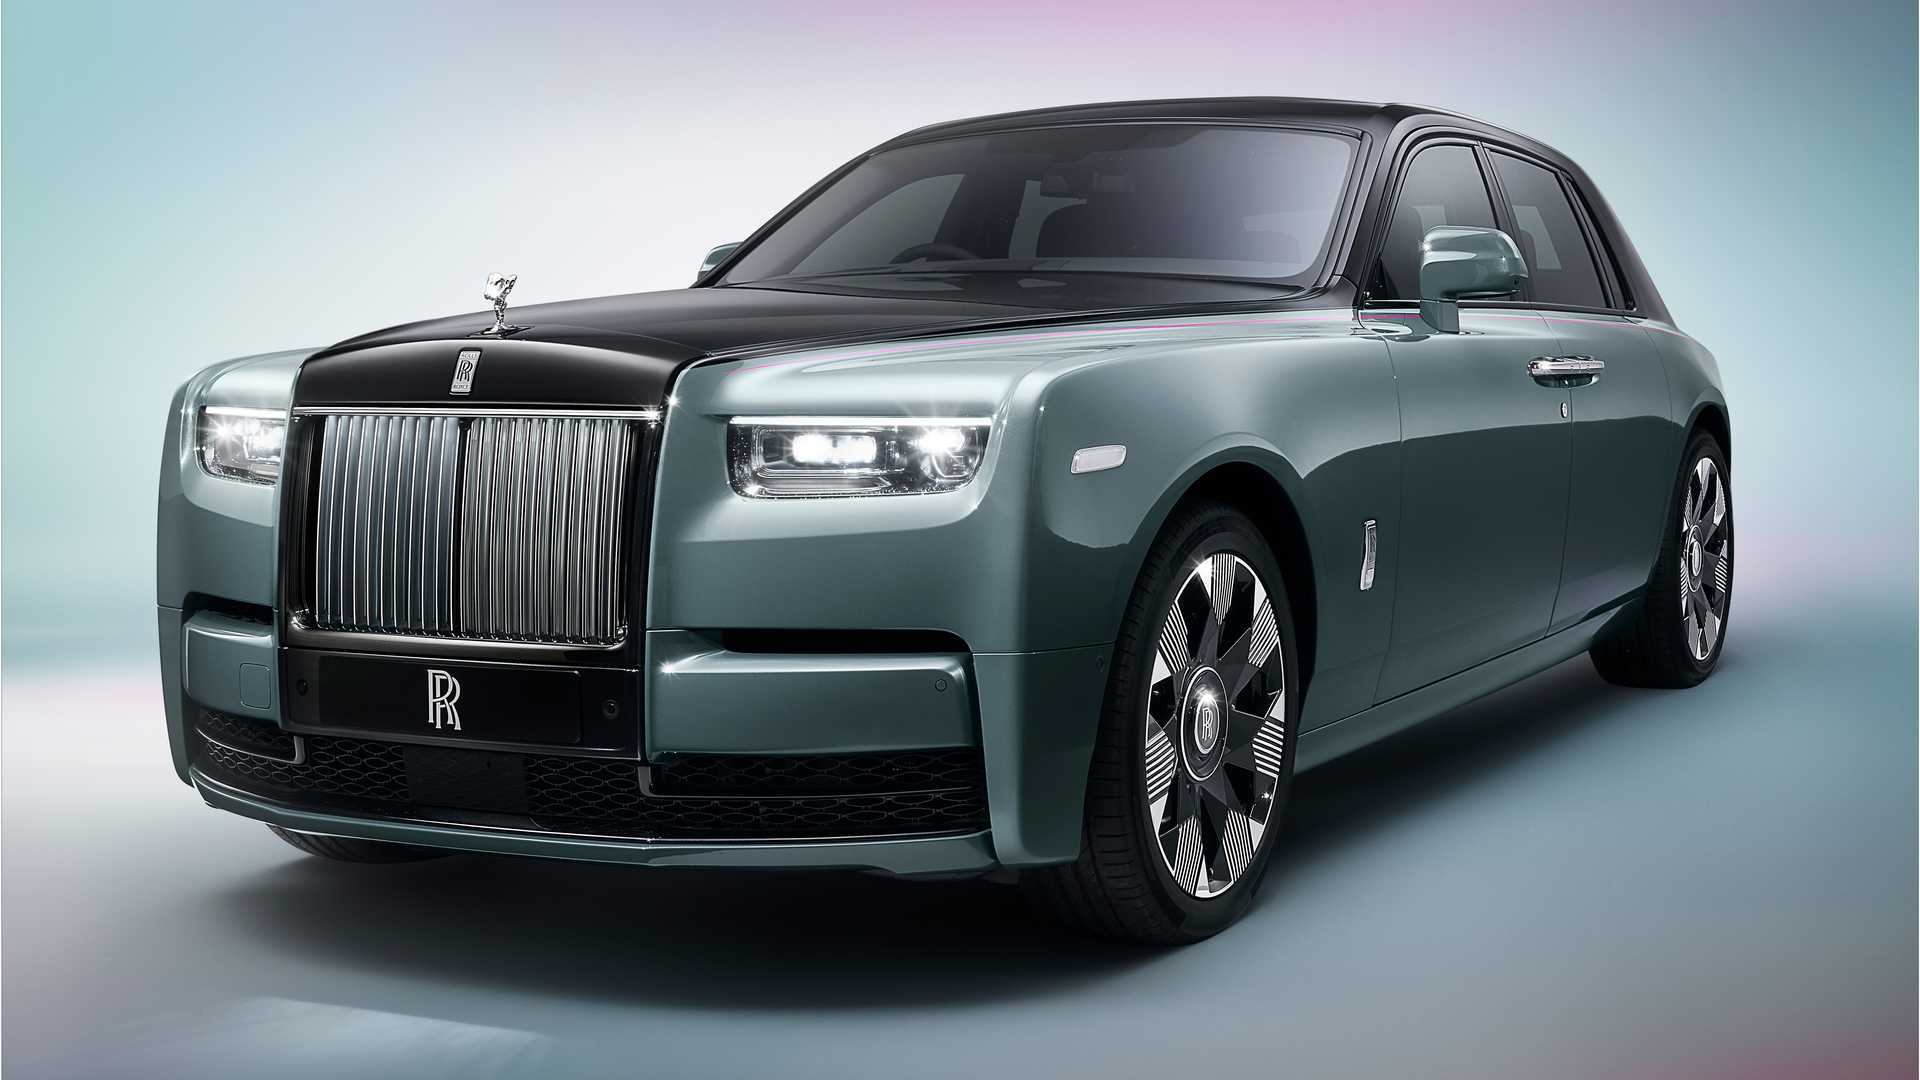 Mewahnya Rolls-Royce Phantom, Mobil Seharga Rp16 Miliar untuk Pemain Timnas Arab Saudi